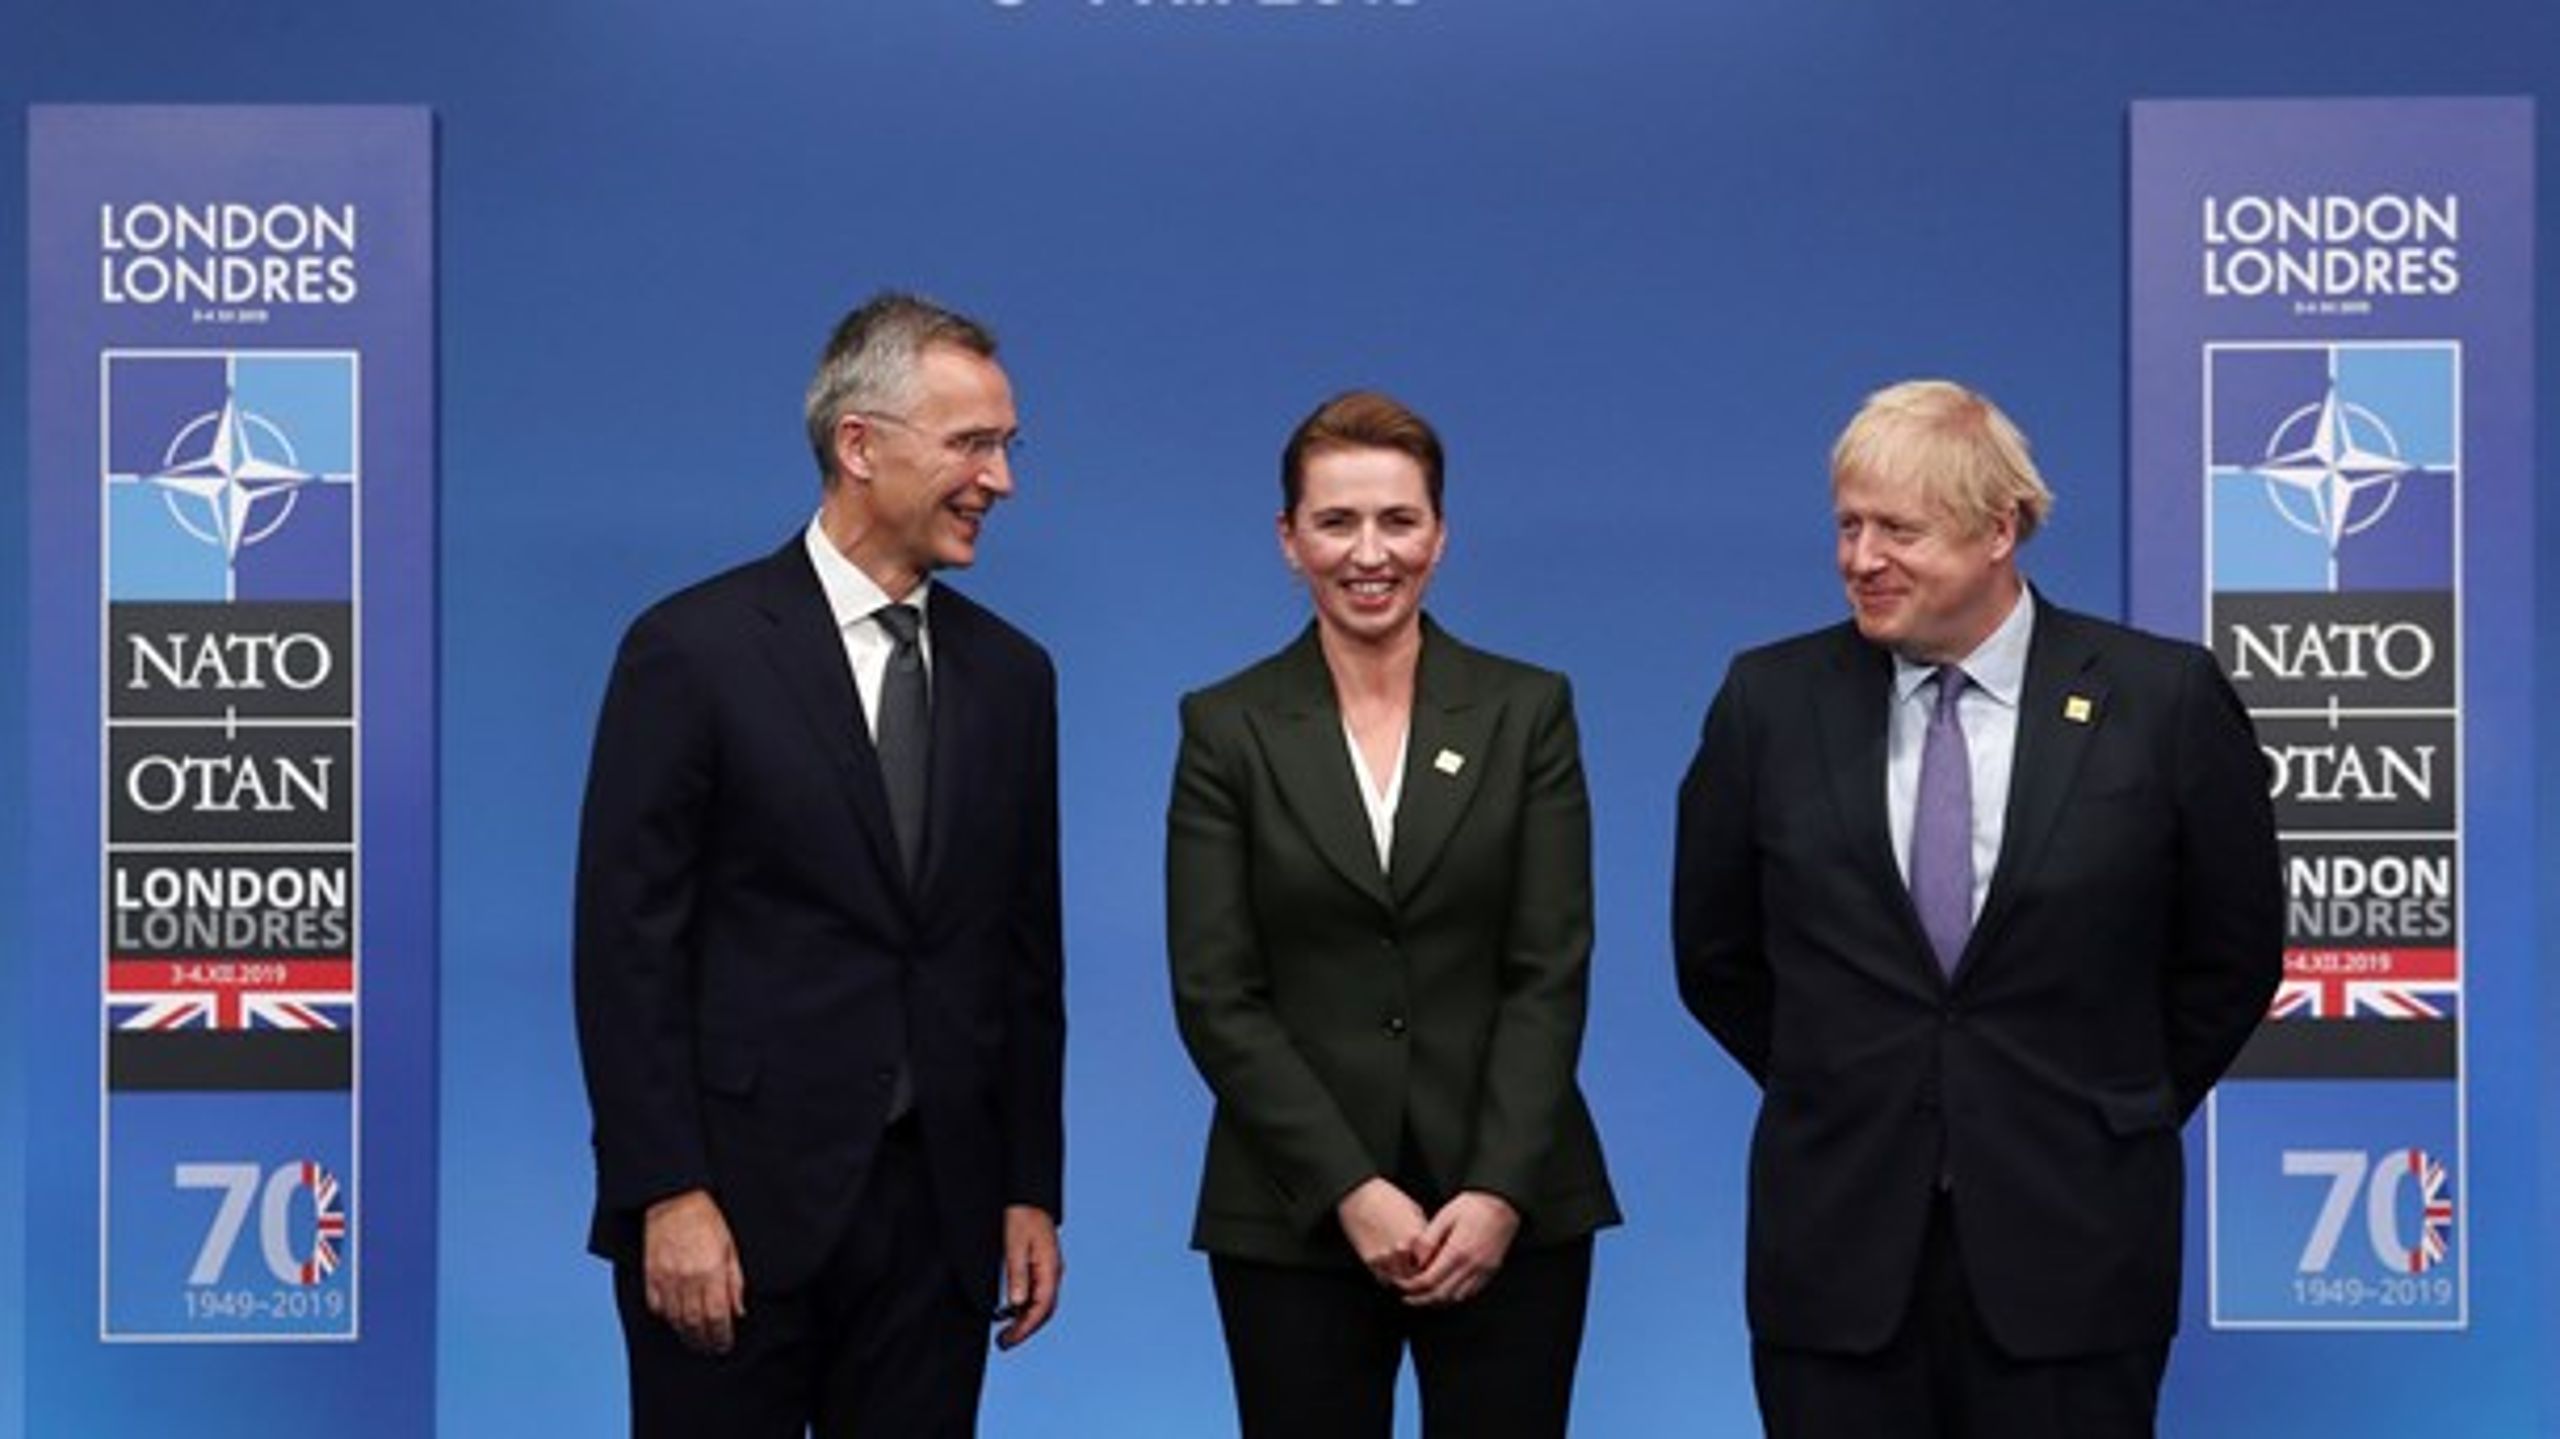 Danmarks statsminister Mette Frederiksen (i midten) sammen med Natos generalsekretær, Jens Stoltenberg (t.v.), og Storbritanniens premierminister, Boris Johnson (t.h.), ved Nato-topmødet i London i december 2019.